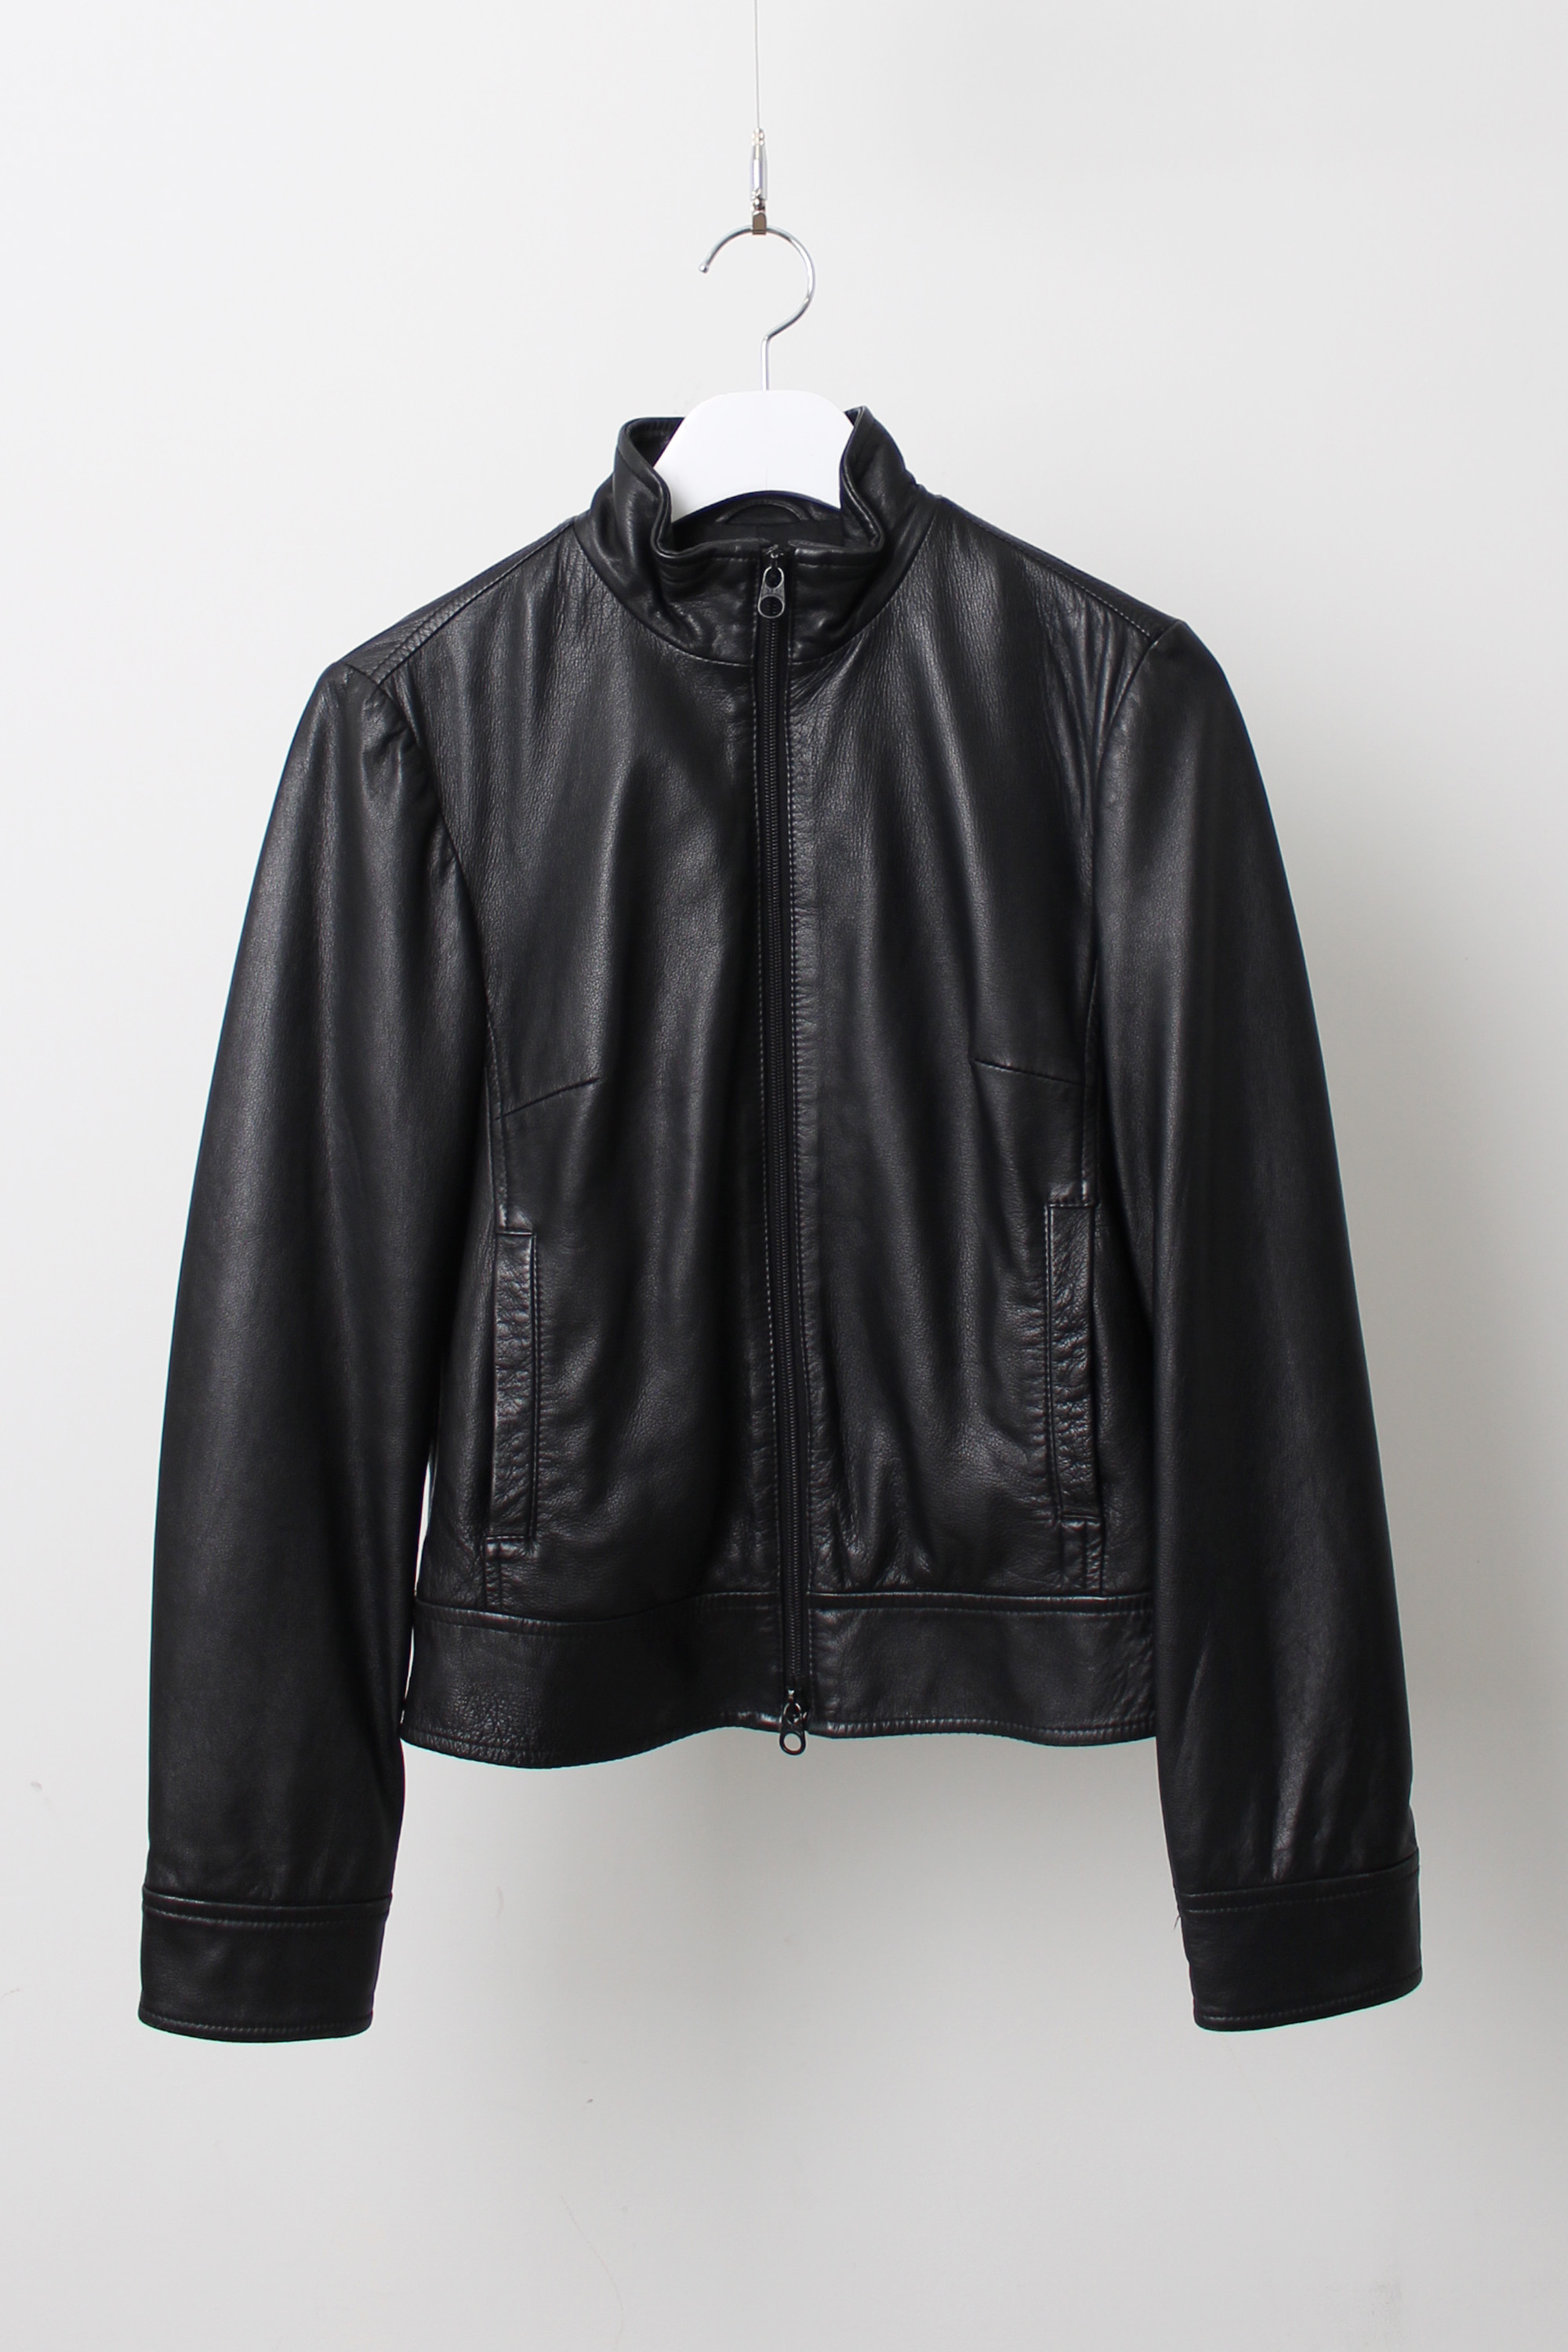 benetton Single Rider jacket